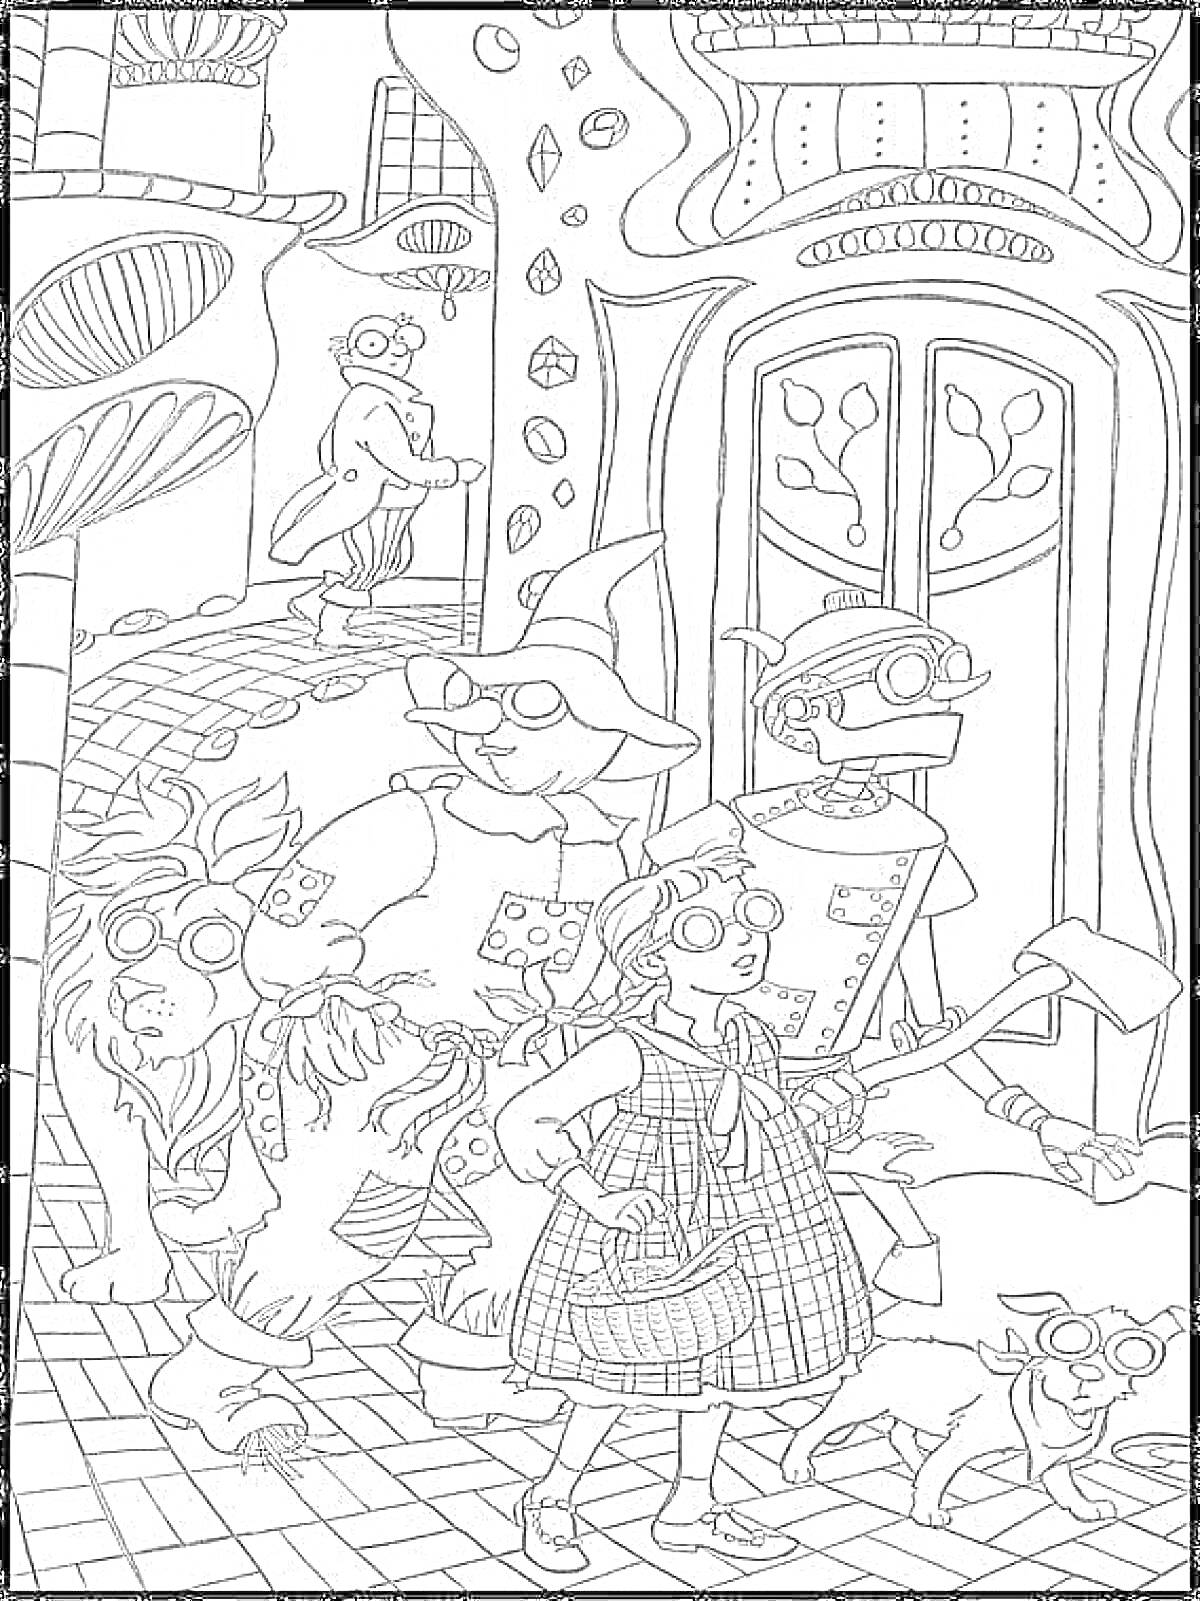 Раскраска Герои у ворот Изумрудного города (девочка, собака, лев, человек из стали, персонаж в шляпе, вход с дверями, здание с окнами, брусчатка под ногами)